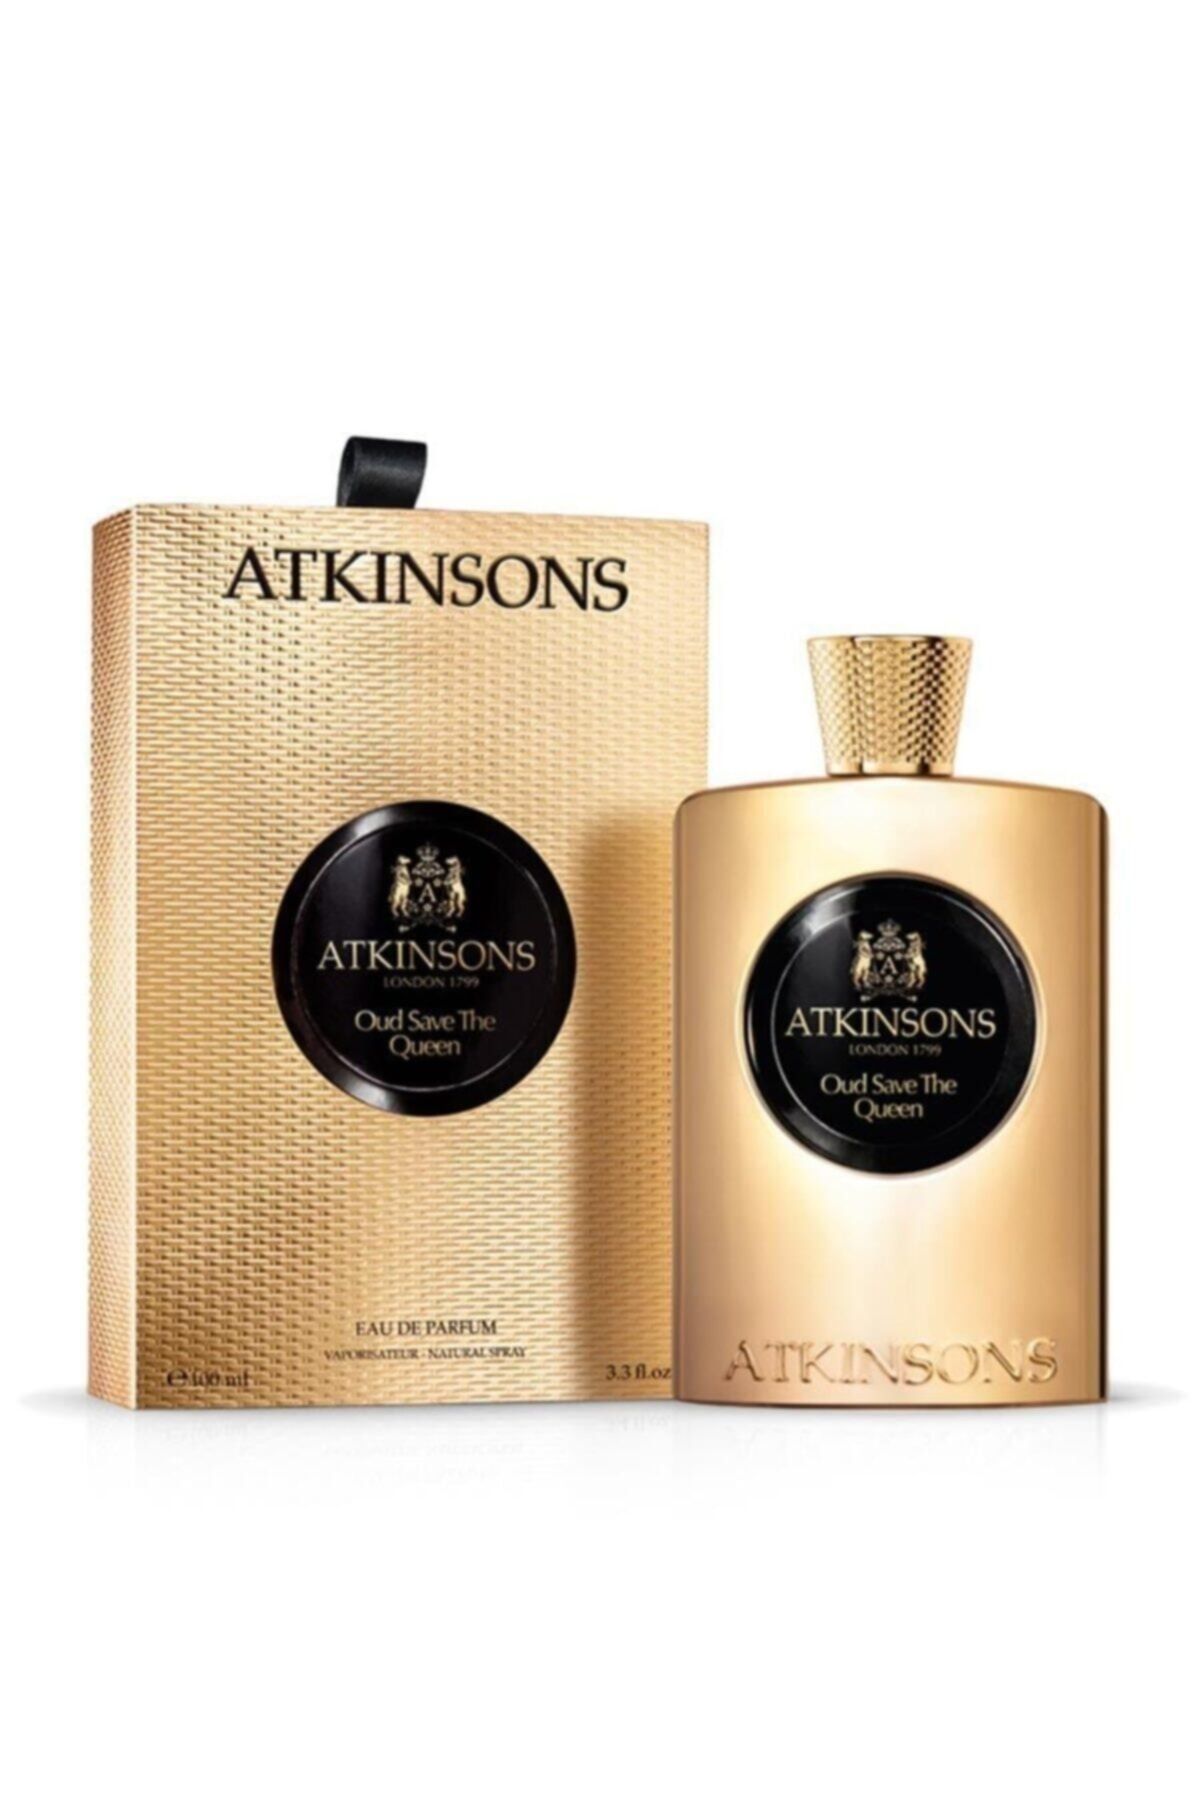 Atkinsons Oud Save The Queen Edp 100 ml Kadın Parfüm 8002135119093